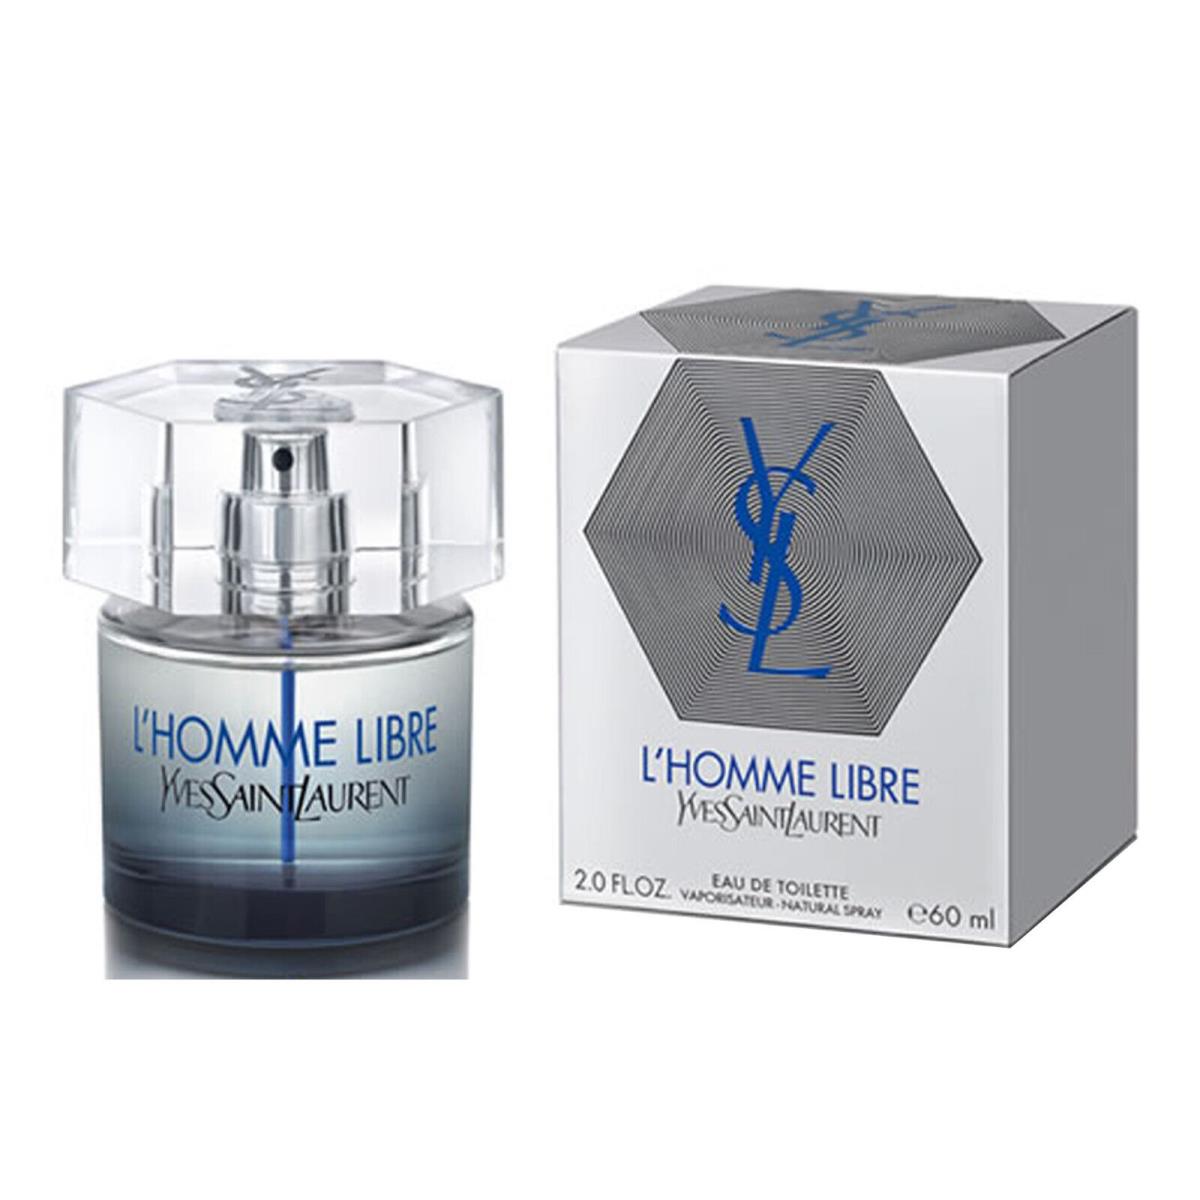 Yves Saint Laurent L`homme Libre 2.0 oz / 60 ml Edt Spray For Men